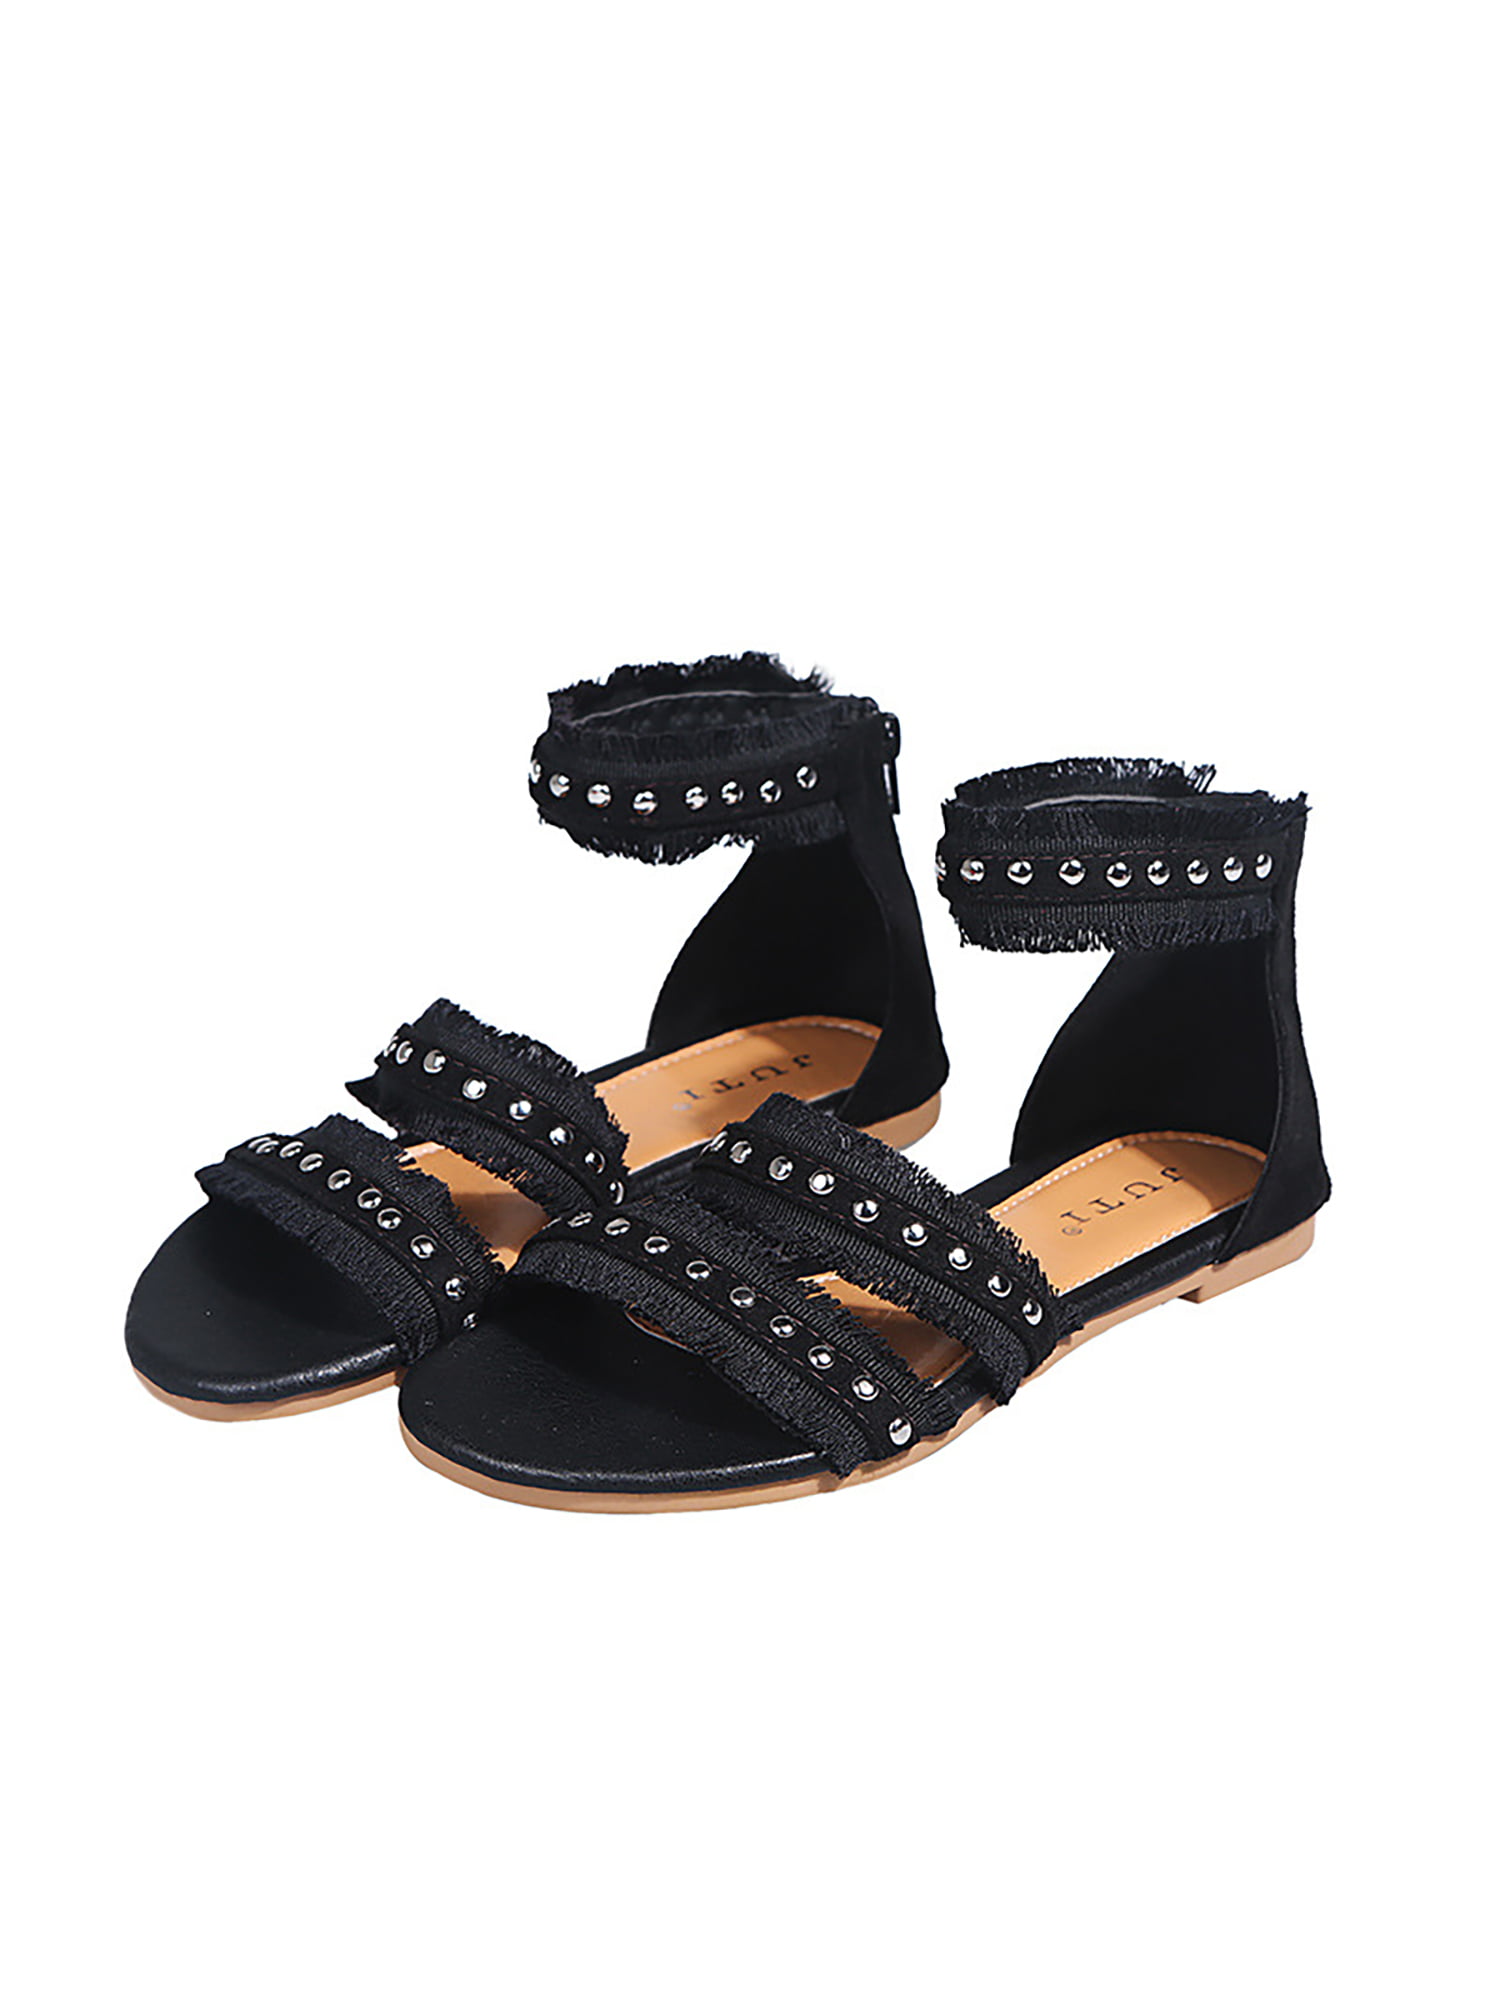 Moonker Girls Women Summer Fashion Flip-Flops Wedges Slippers Sandals Ladies Flowers Non-Slip Slides 